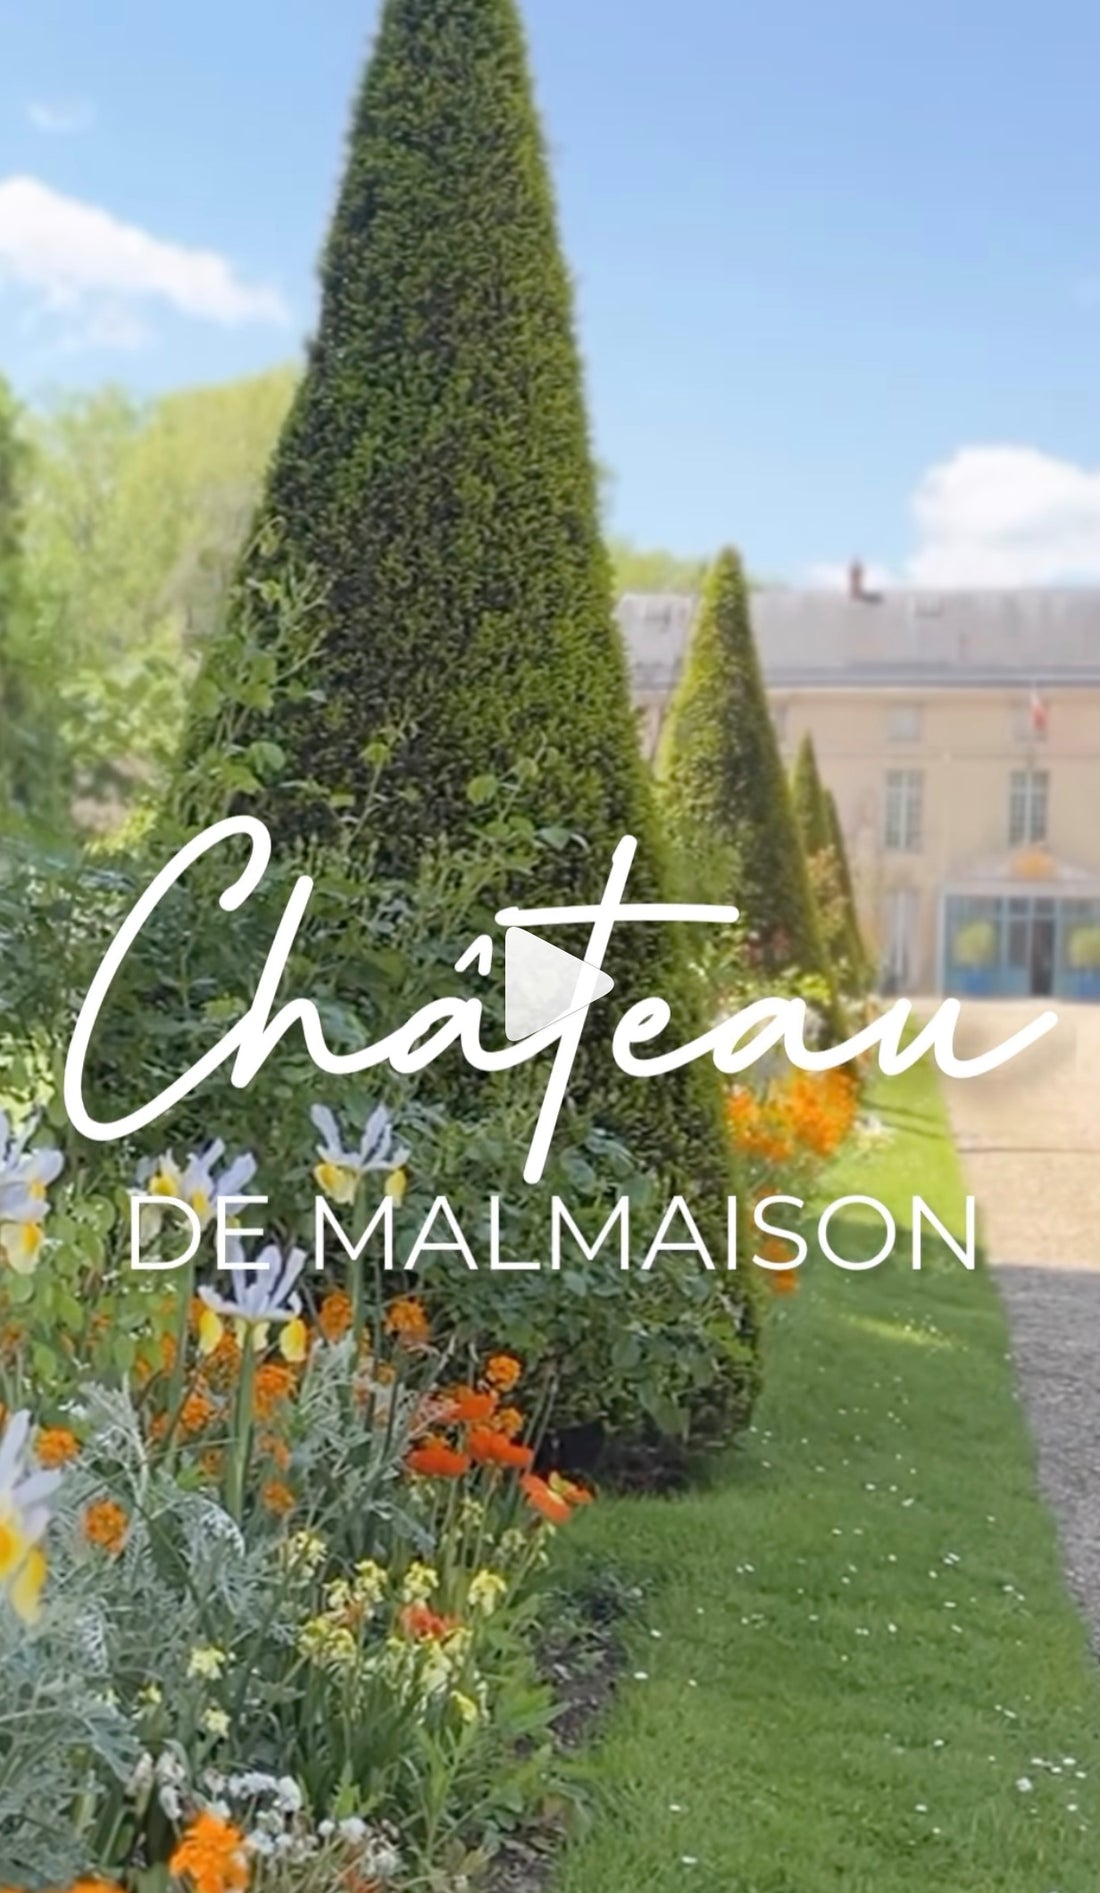 Château de Malmaison.